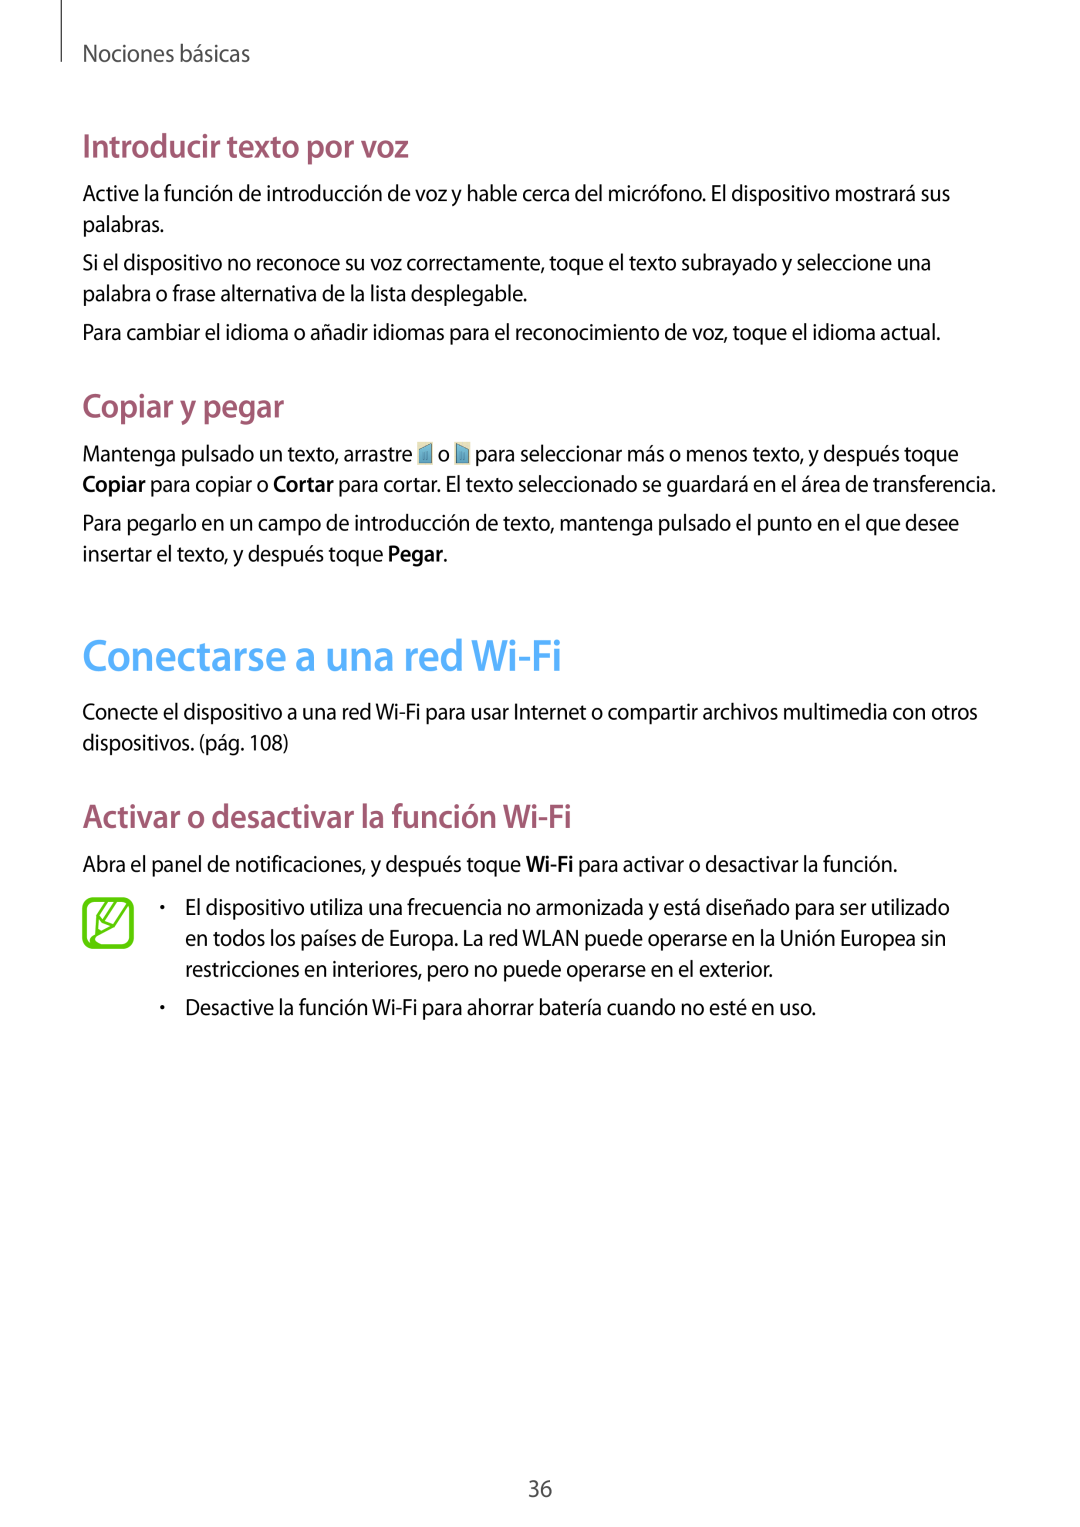 Samsung GT-I9195ZWAPHE manual Conectarse a una red Wi-Fi, Introducir texto por voz, Copiar y pegar, Nociones básicas 